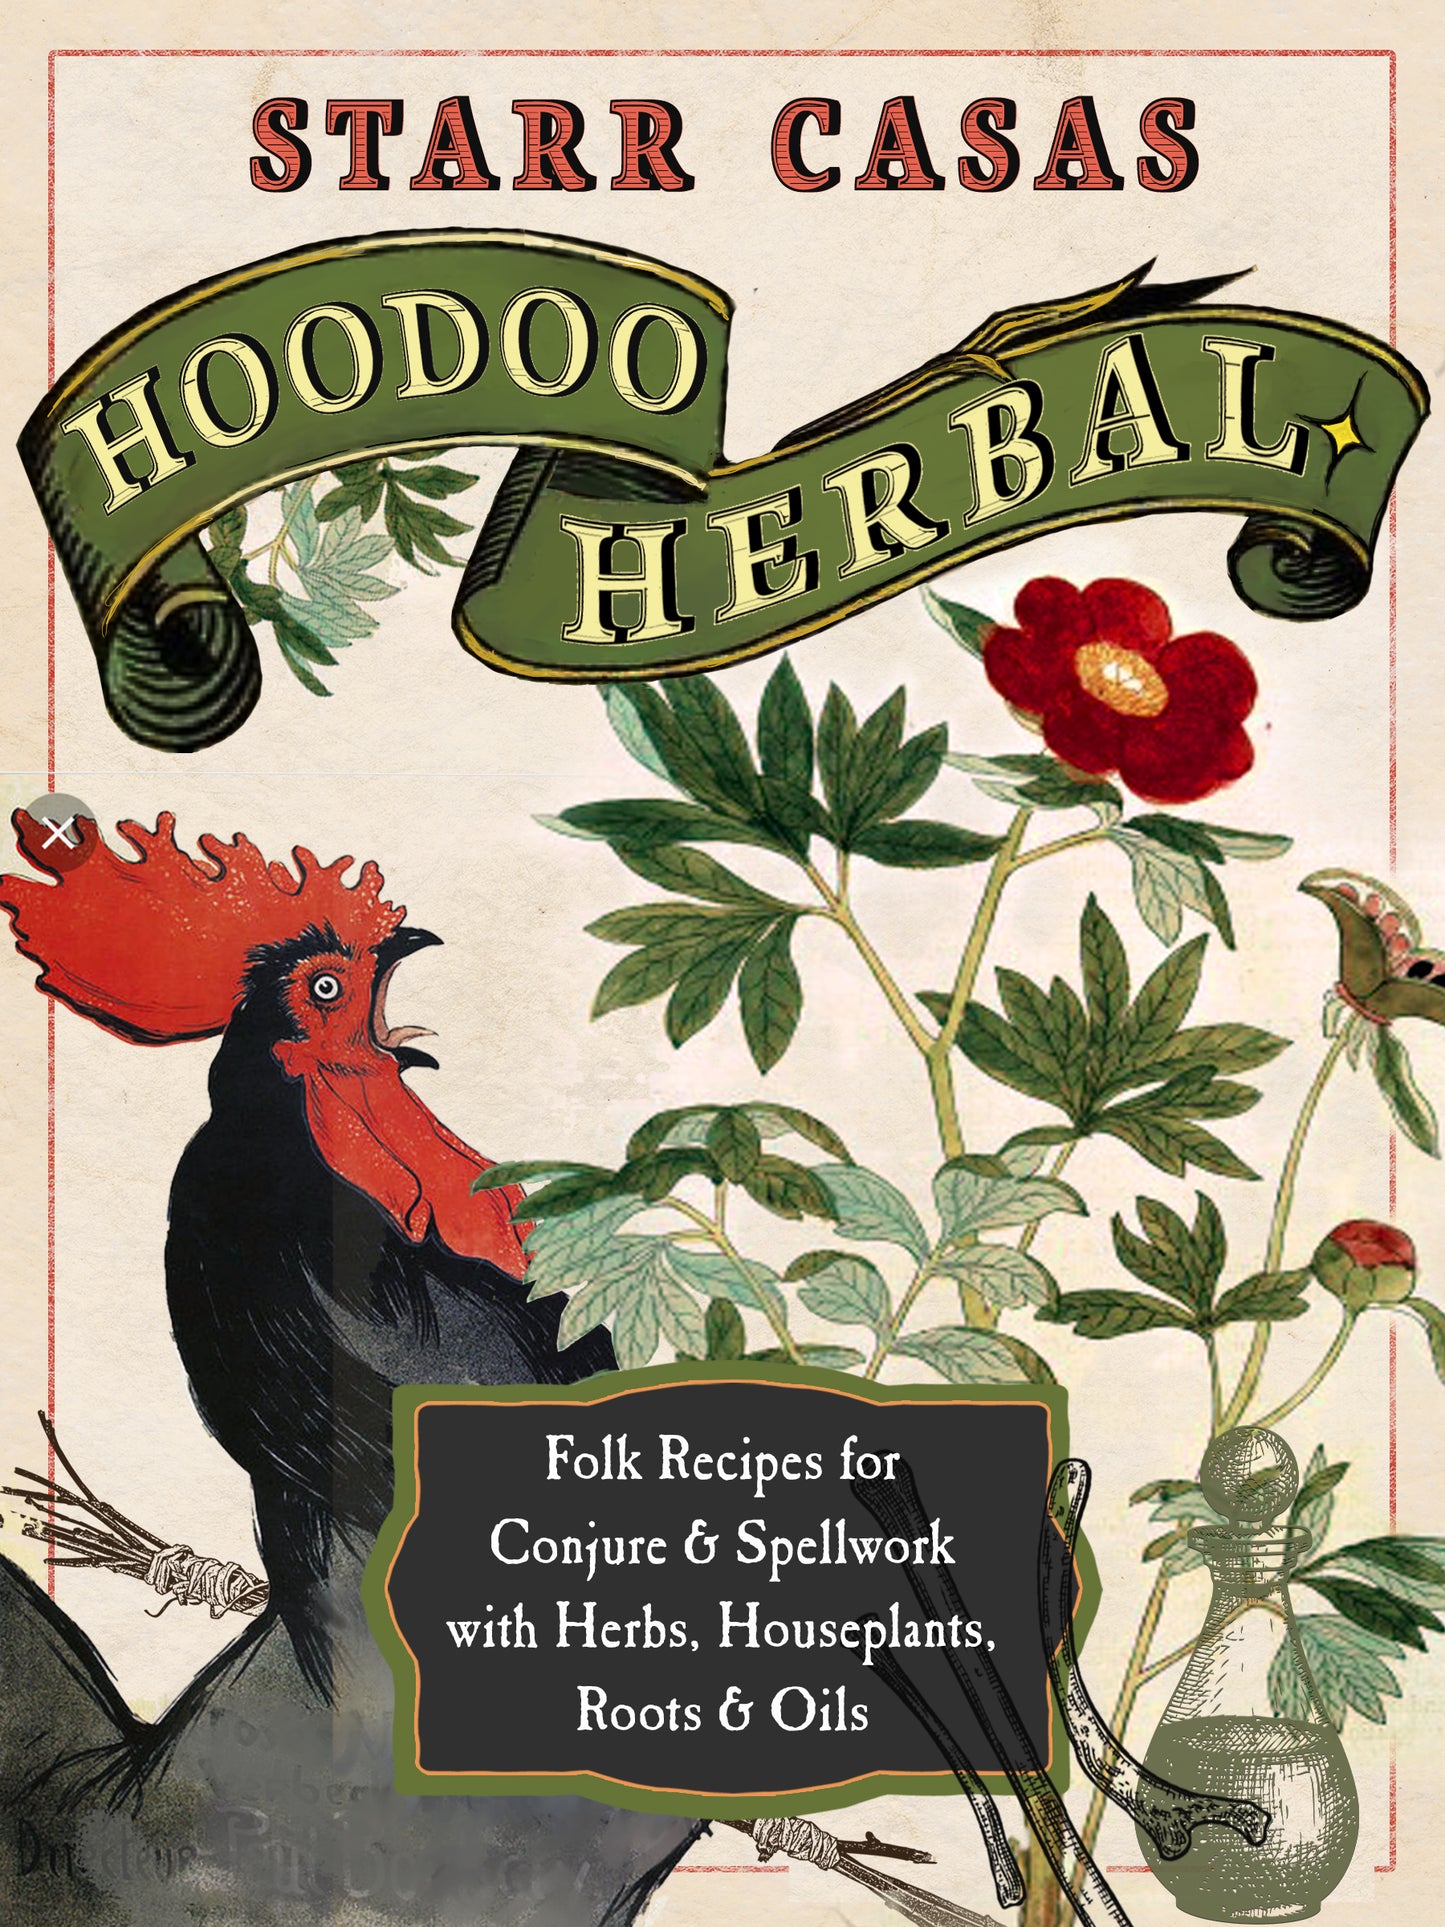 Hoodoo Herbal